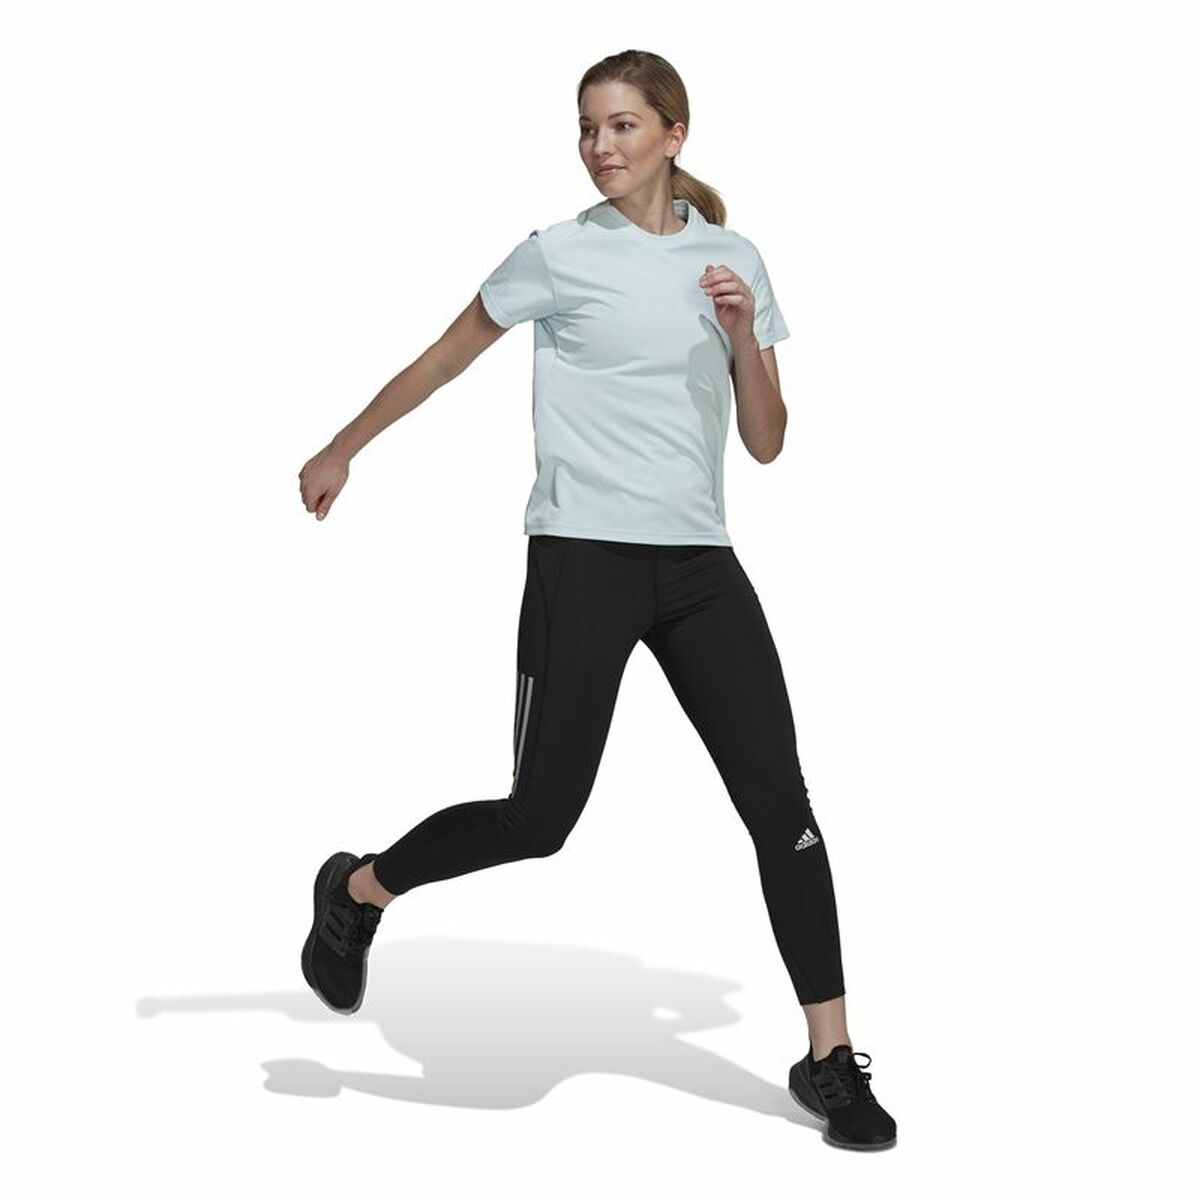 Women’s Short Sleeve T-Shirt Adidas Run It 